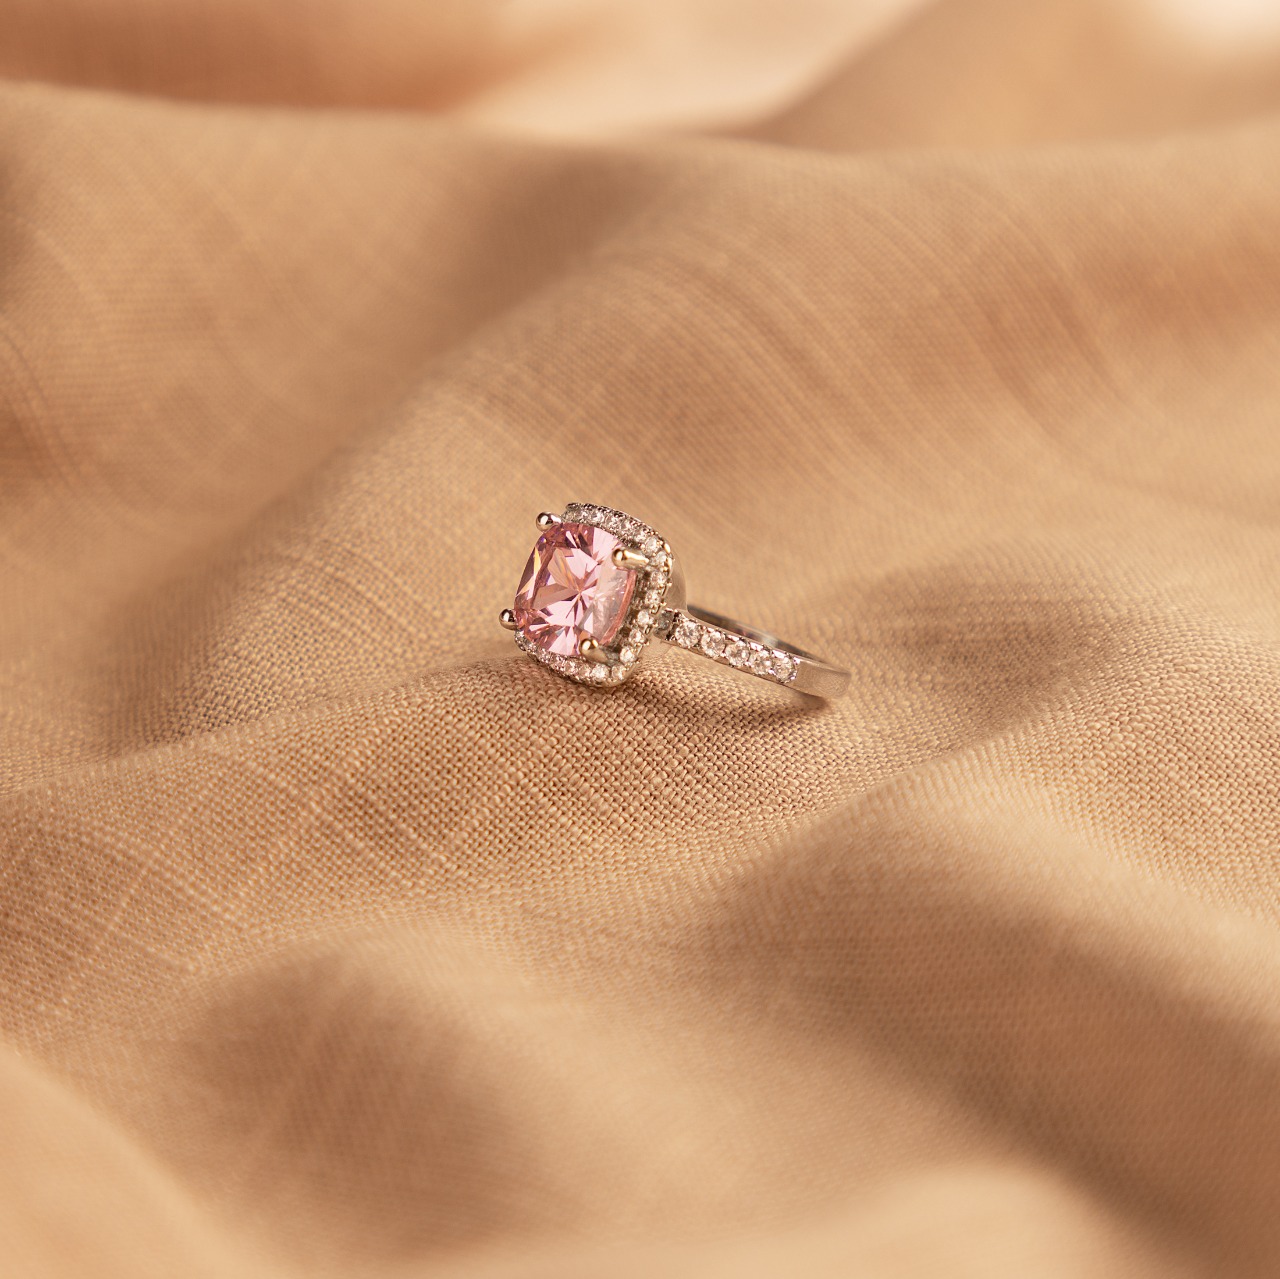 Ring roze steen | Webshop Juwelia